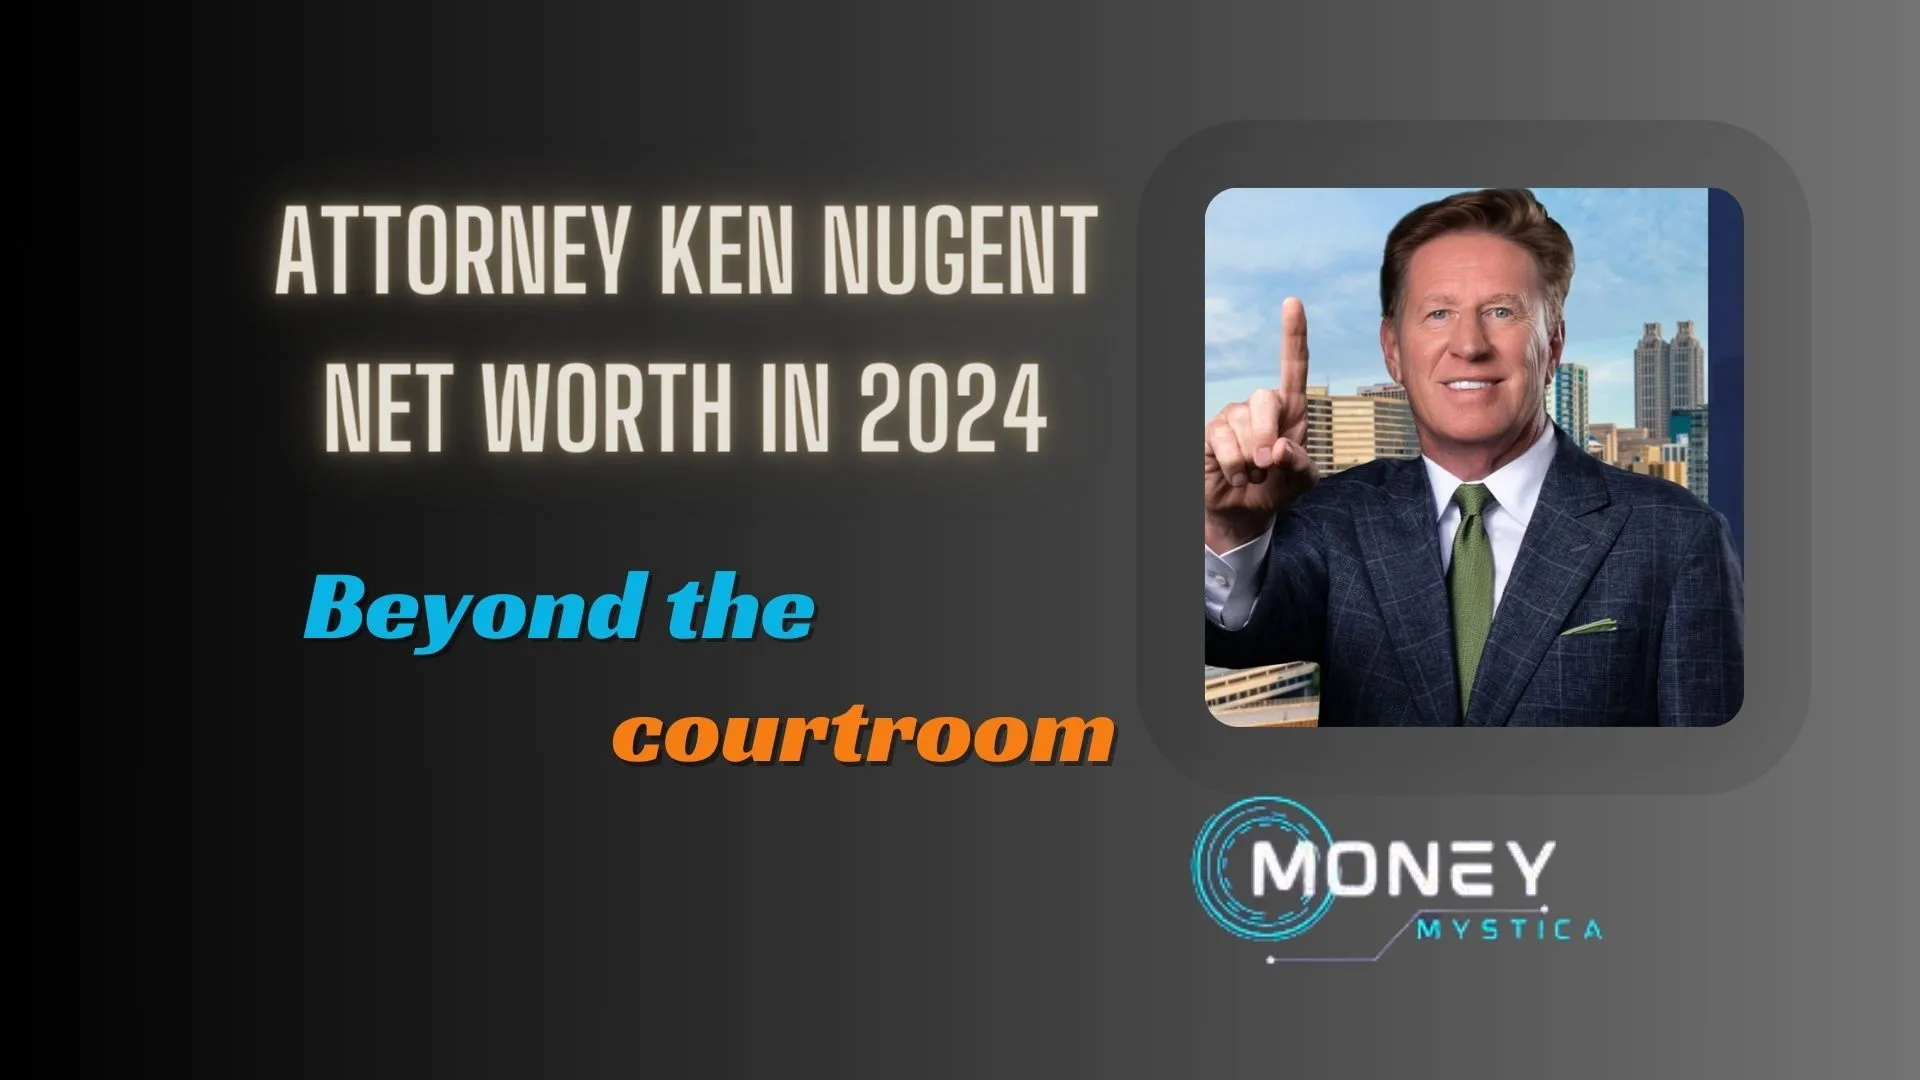 Attorney Ken Nugent Net Worth in 2024